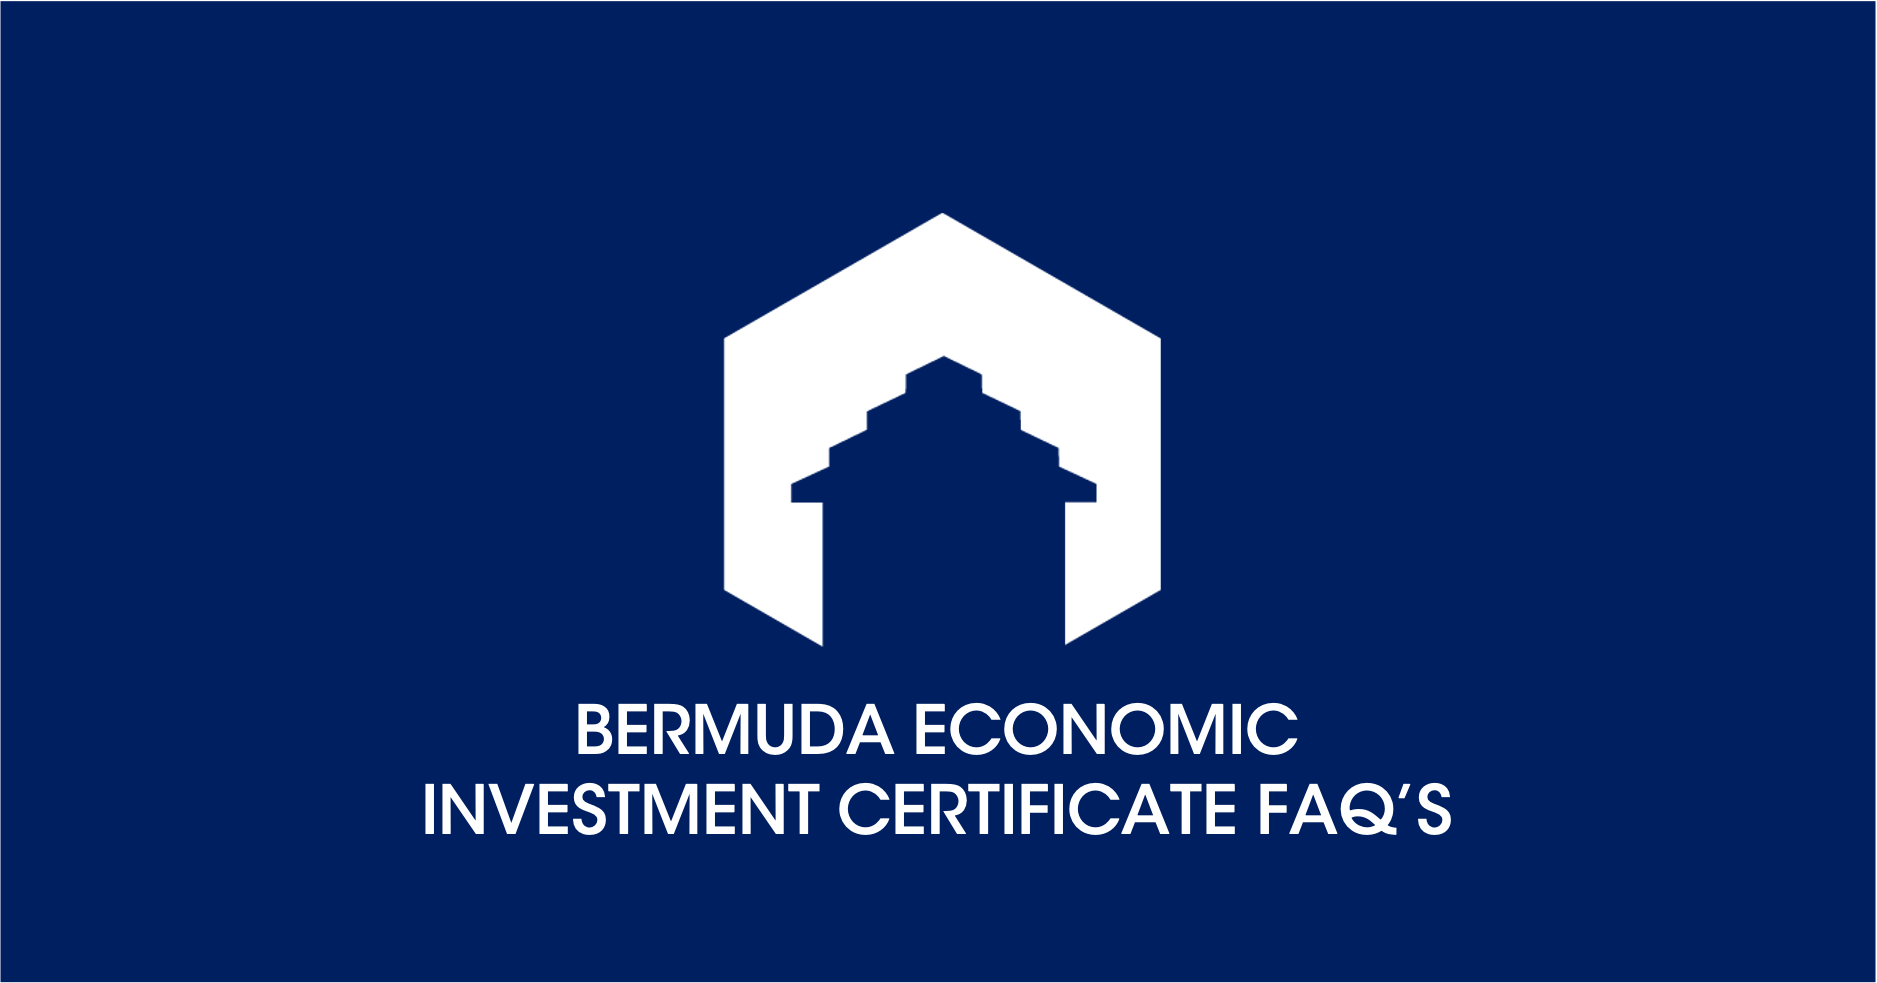 Bermuda Economic Investment Certificate FAQ’s